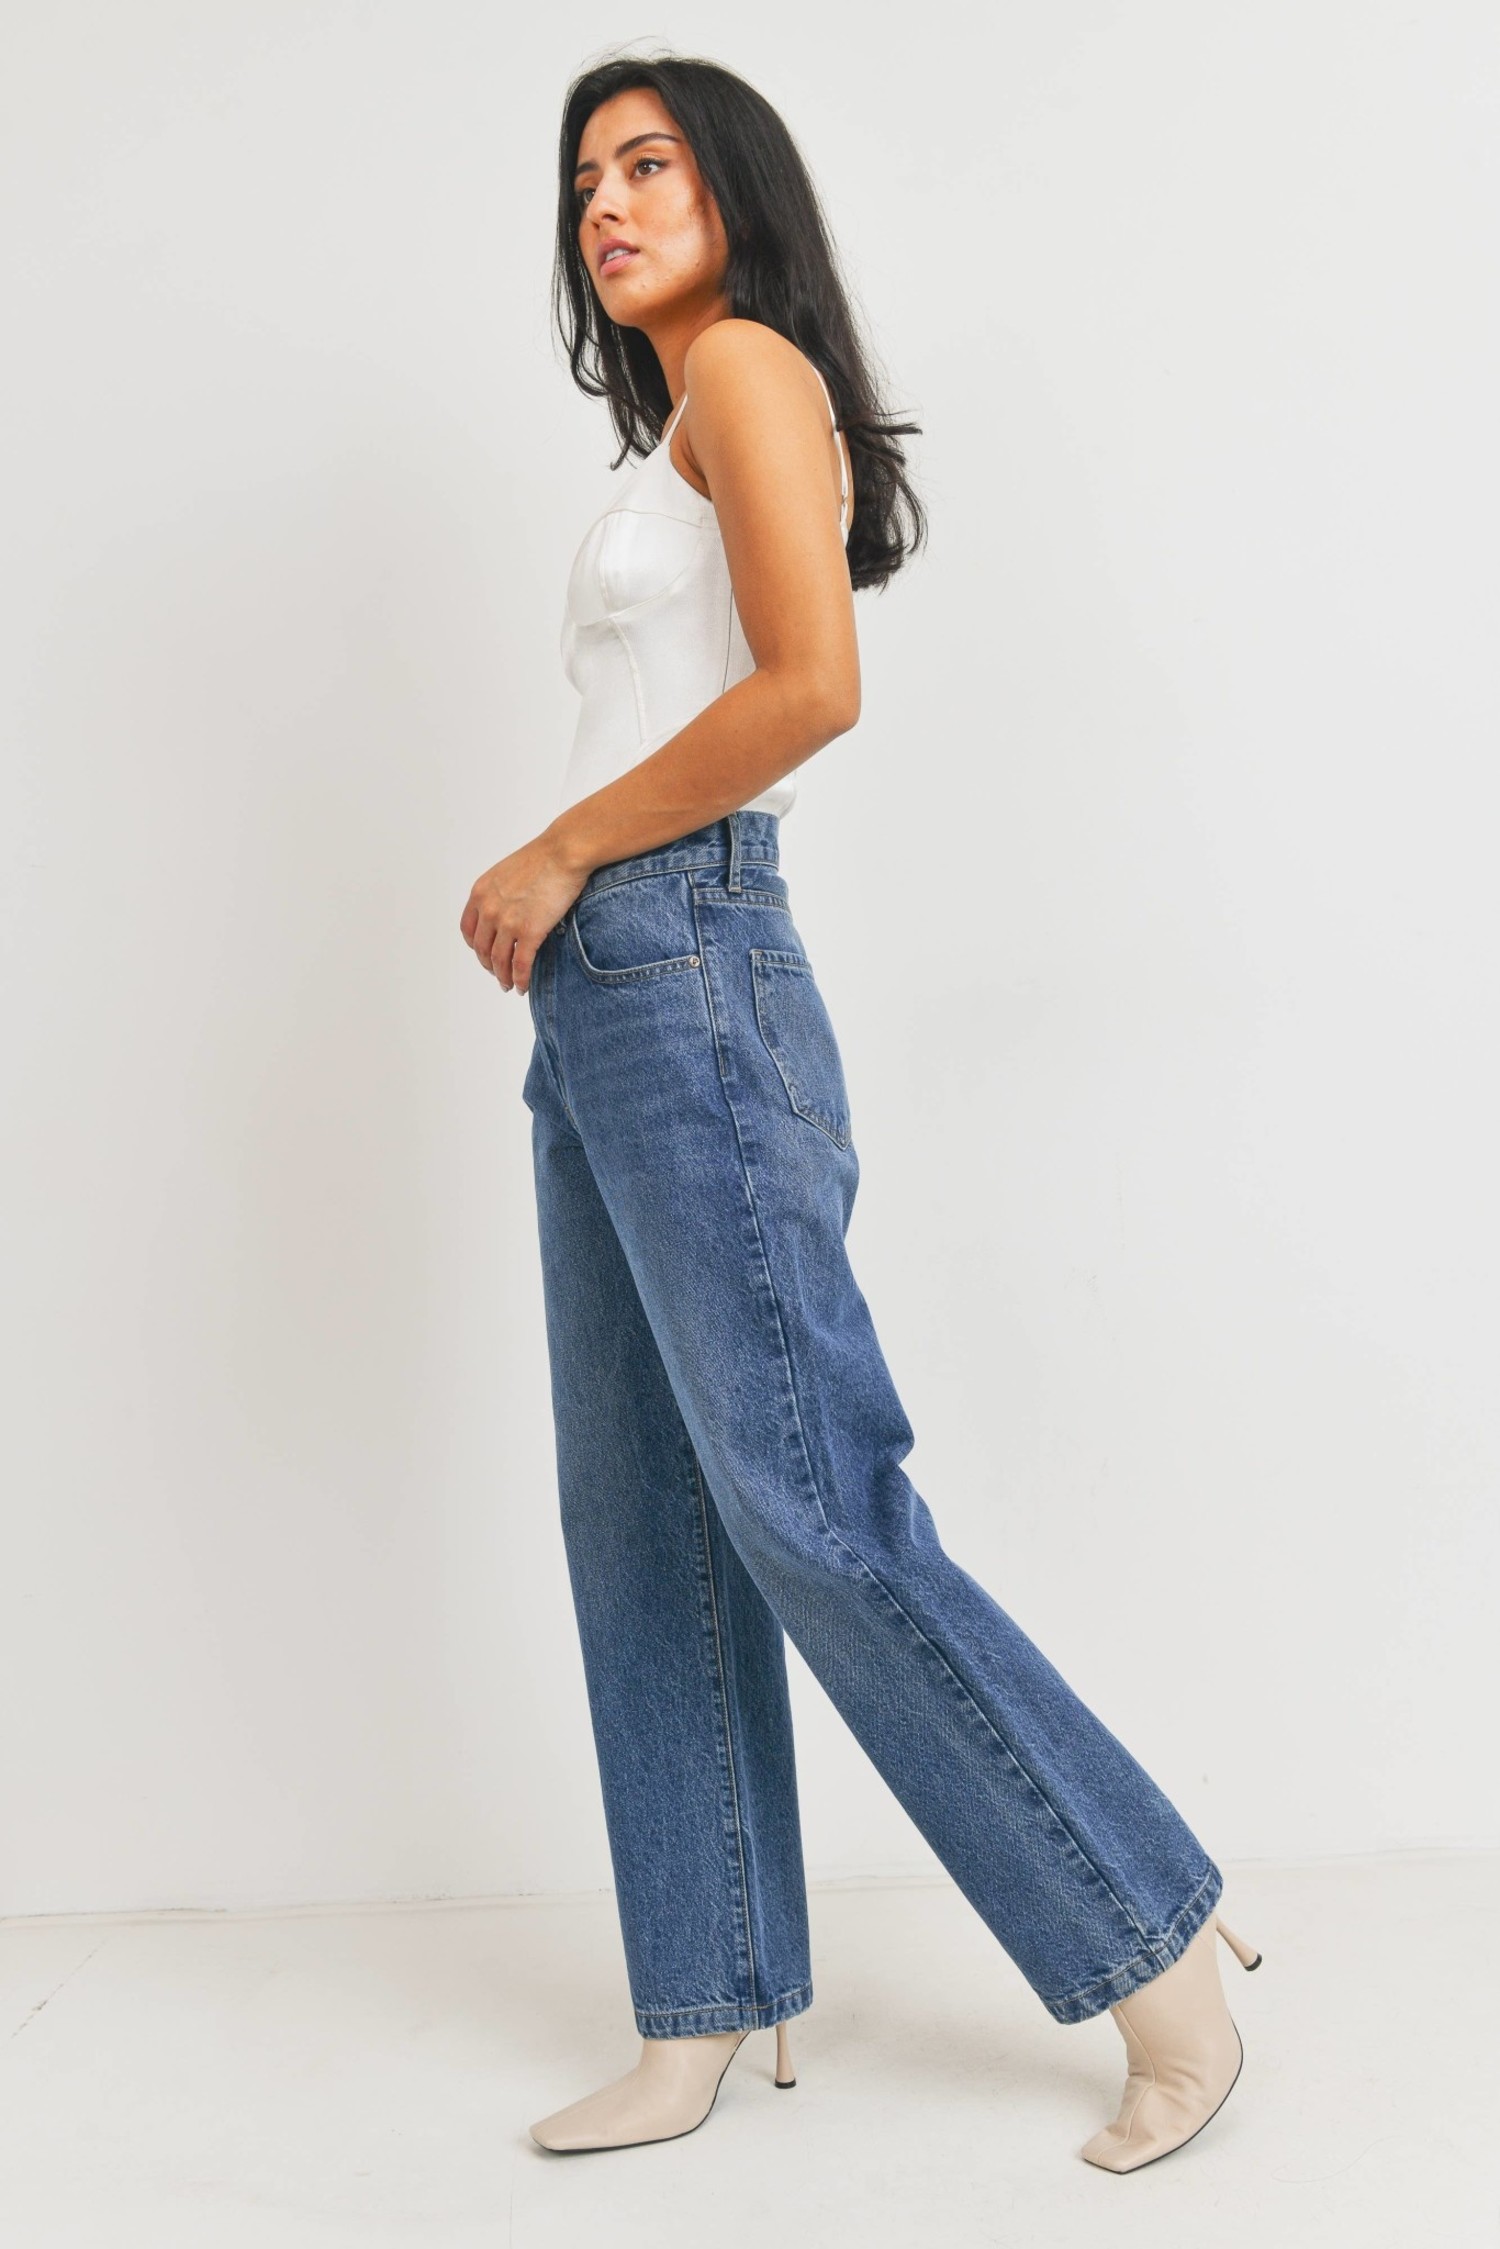 Women's Hudson Jeans Designer Jeans